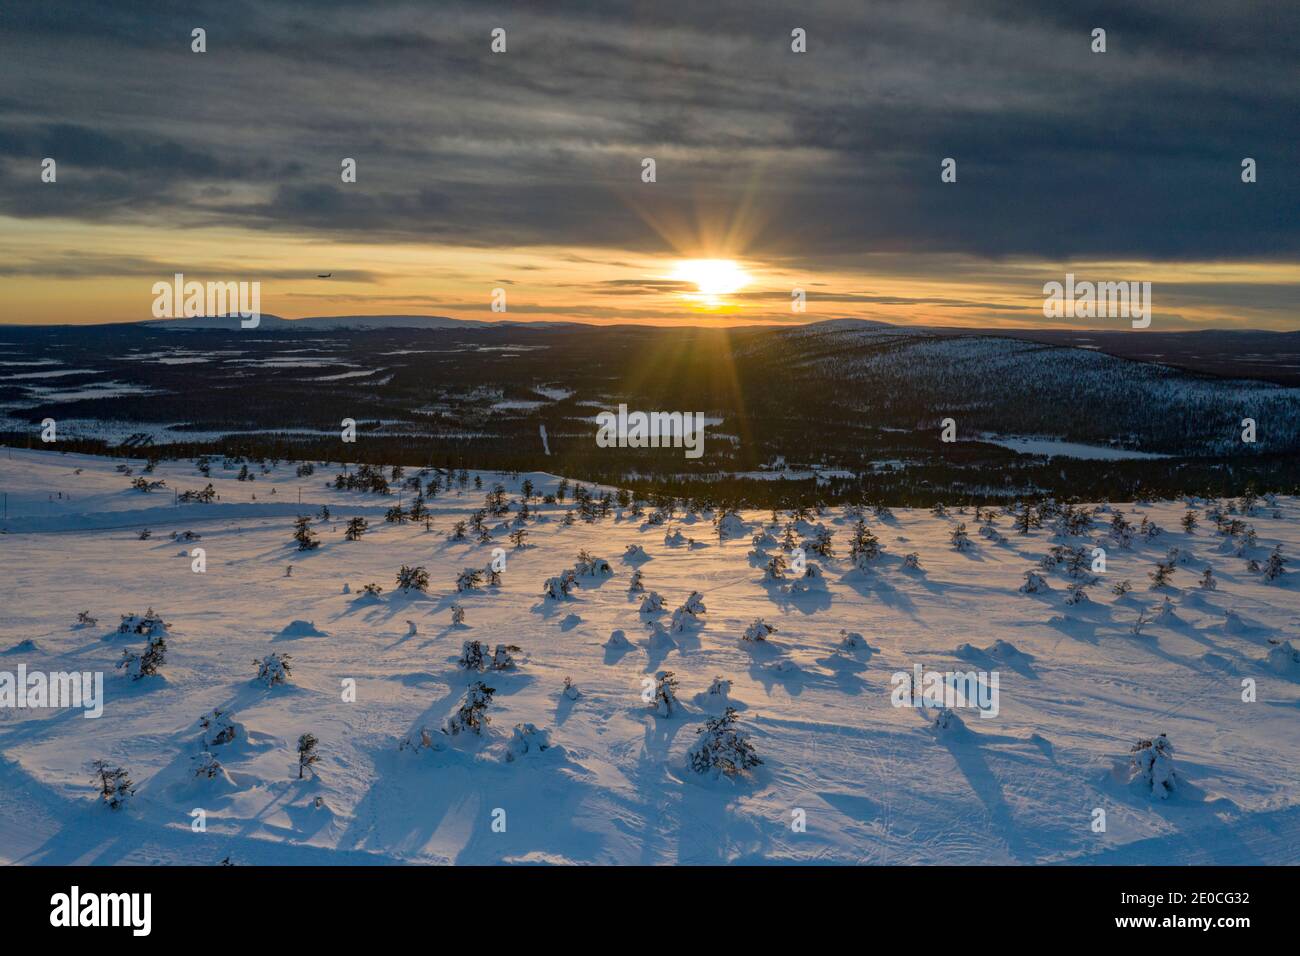 Coucher de soleil arctique sur la forêt enneigée et le domaine skiable de Levi, Sirkka, municipalité de Kittila, Laponie, Finlande, Europe Banque D'Images